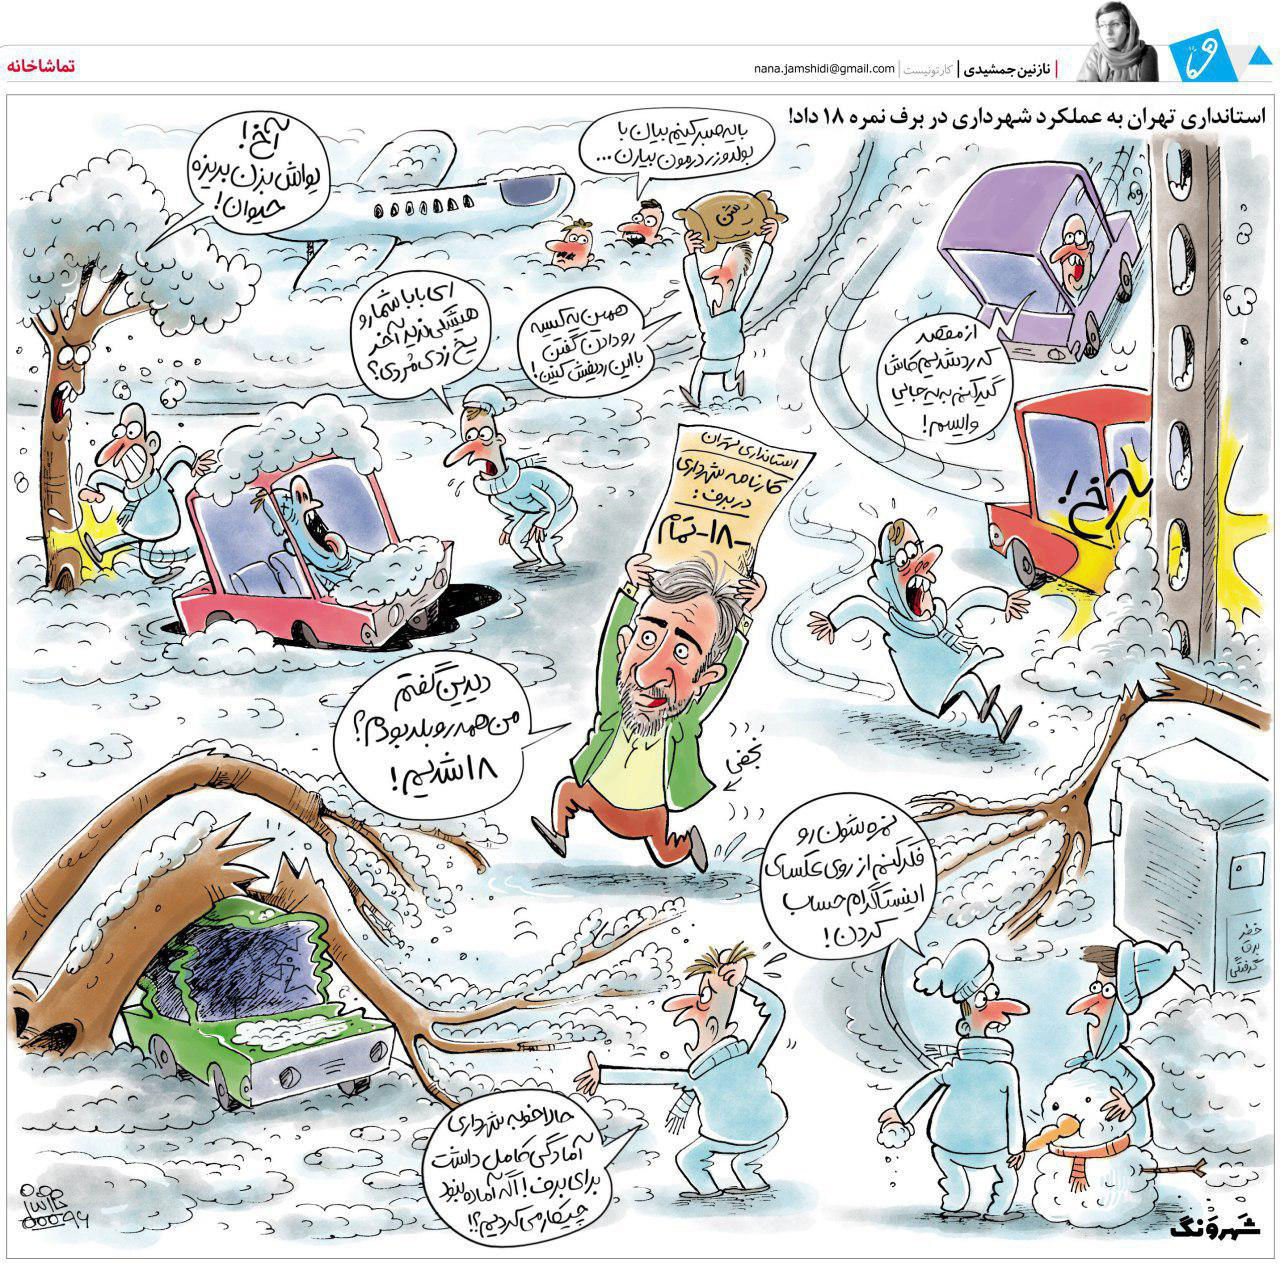 کارتون؛ نمره ۱۸ به عملکرد شهرداری در برف